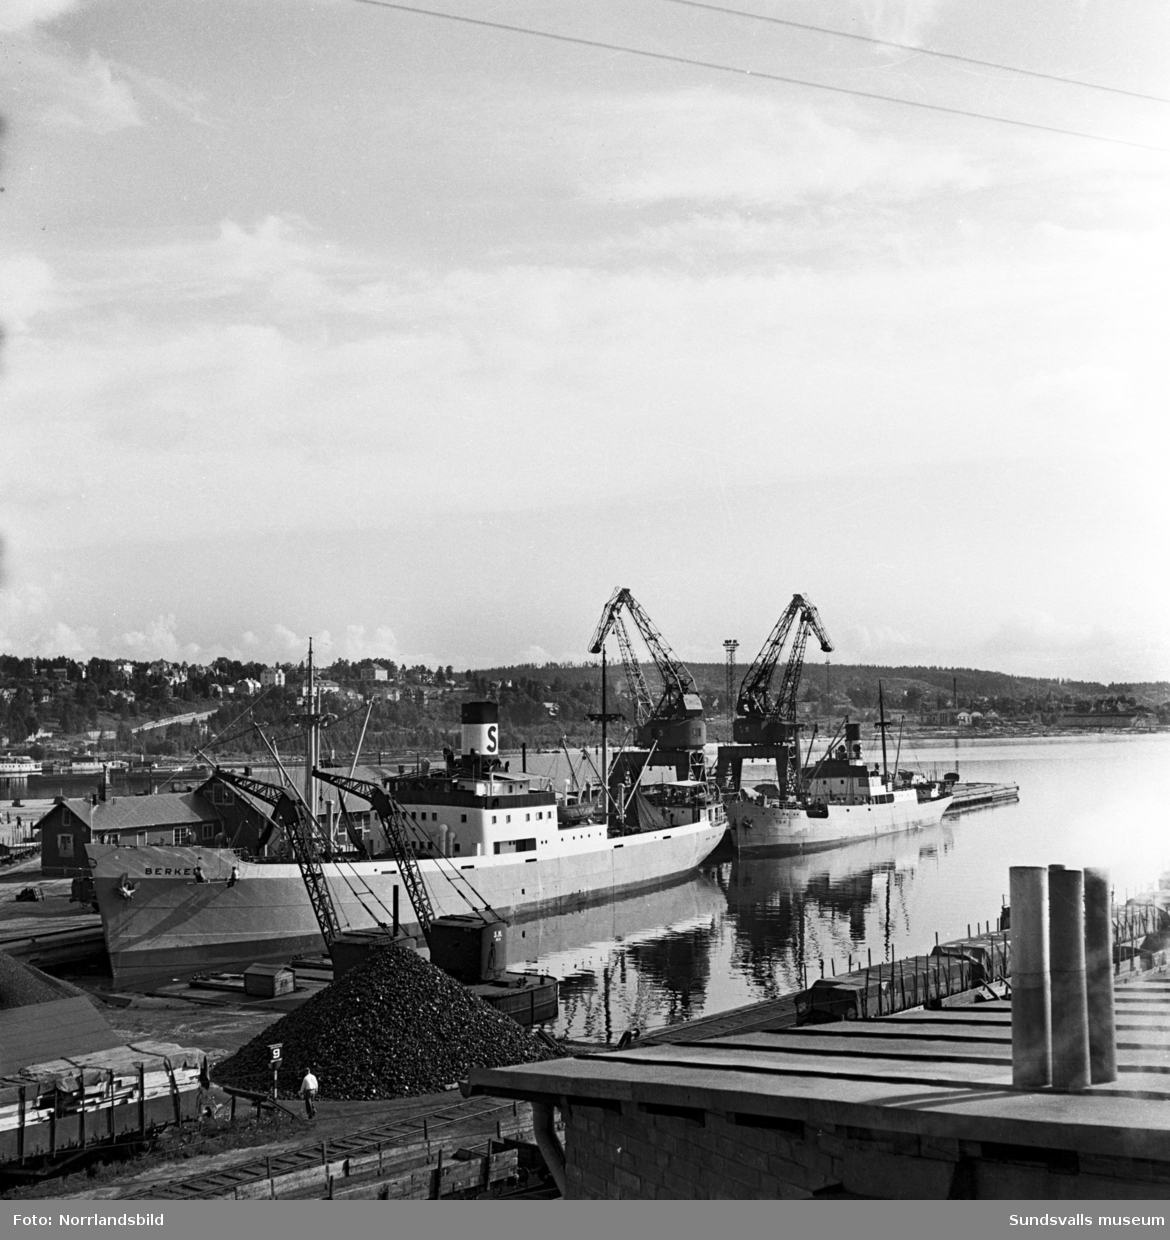 Underhållsarbete på fartyget Berkel i Sundsvalls hamn.